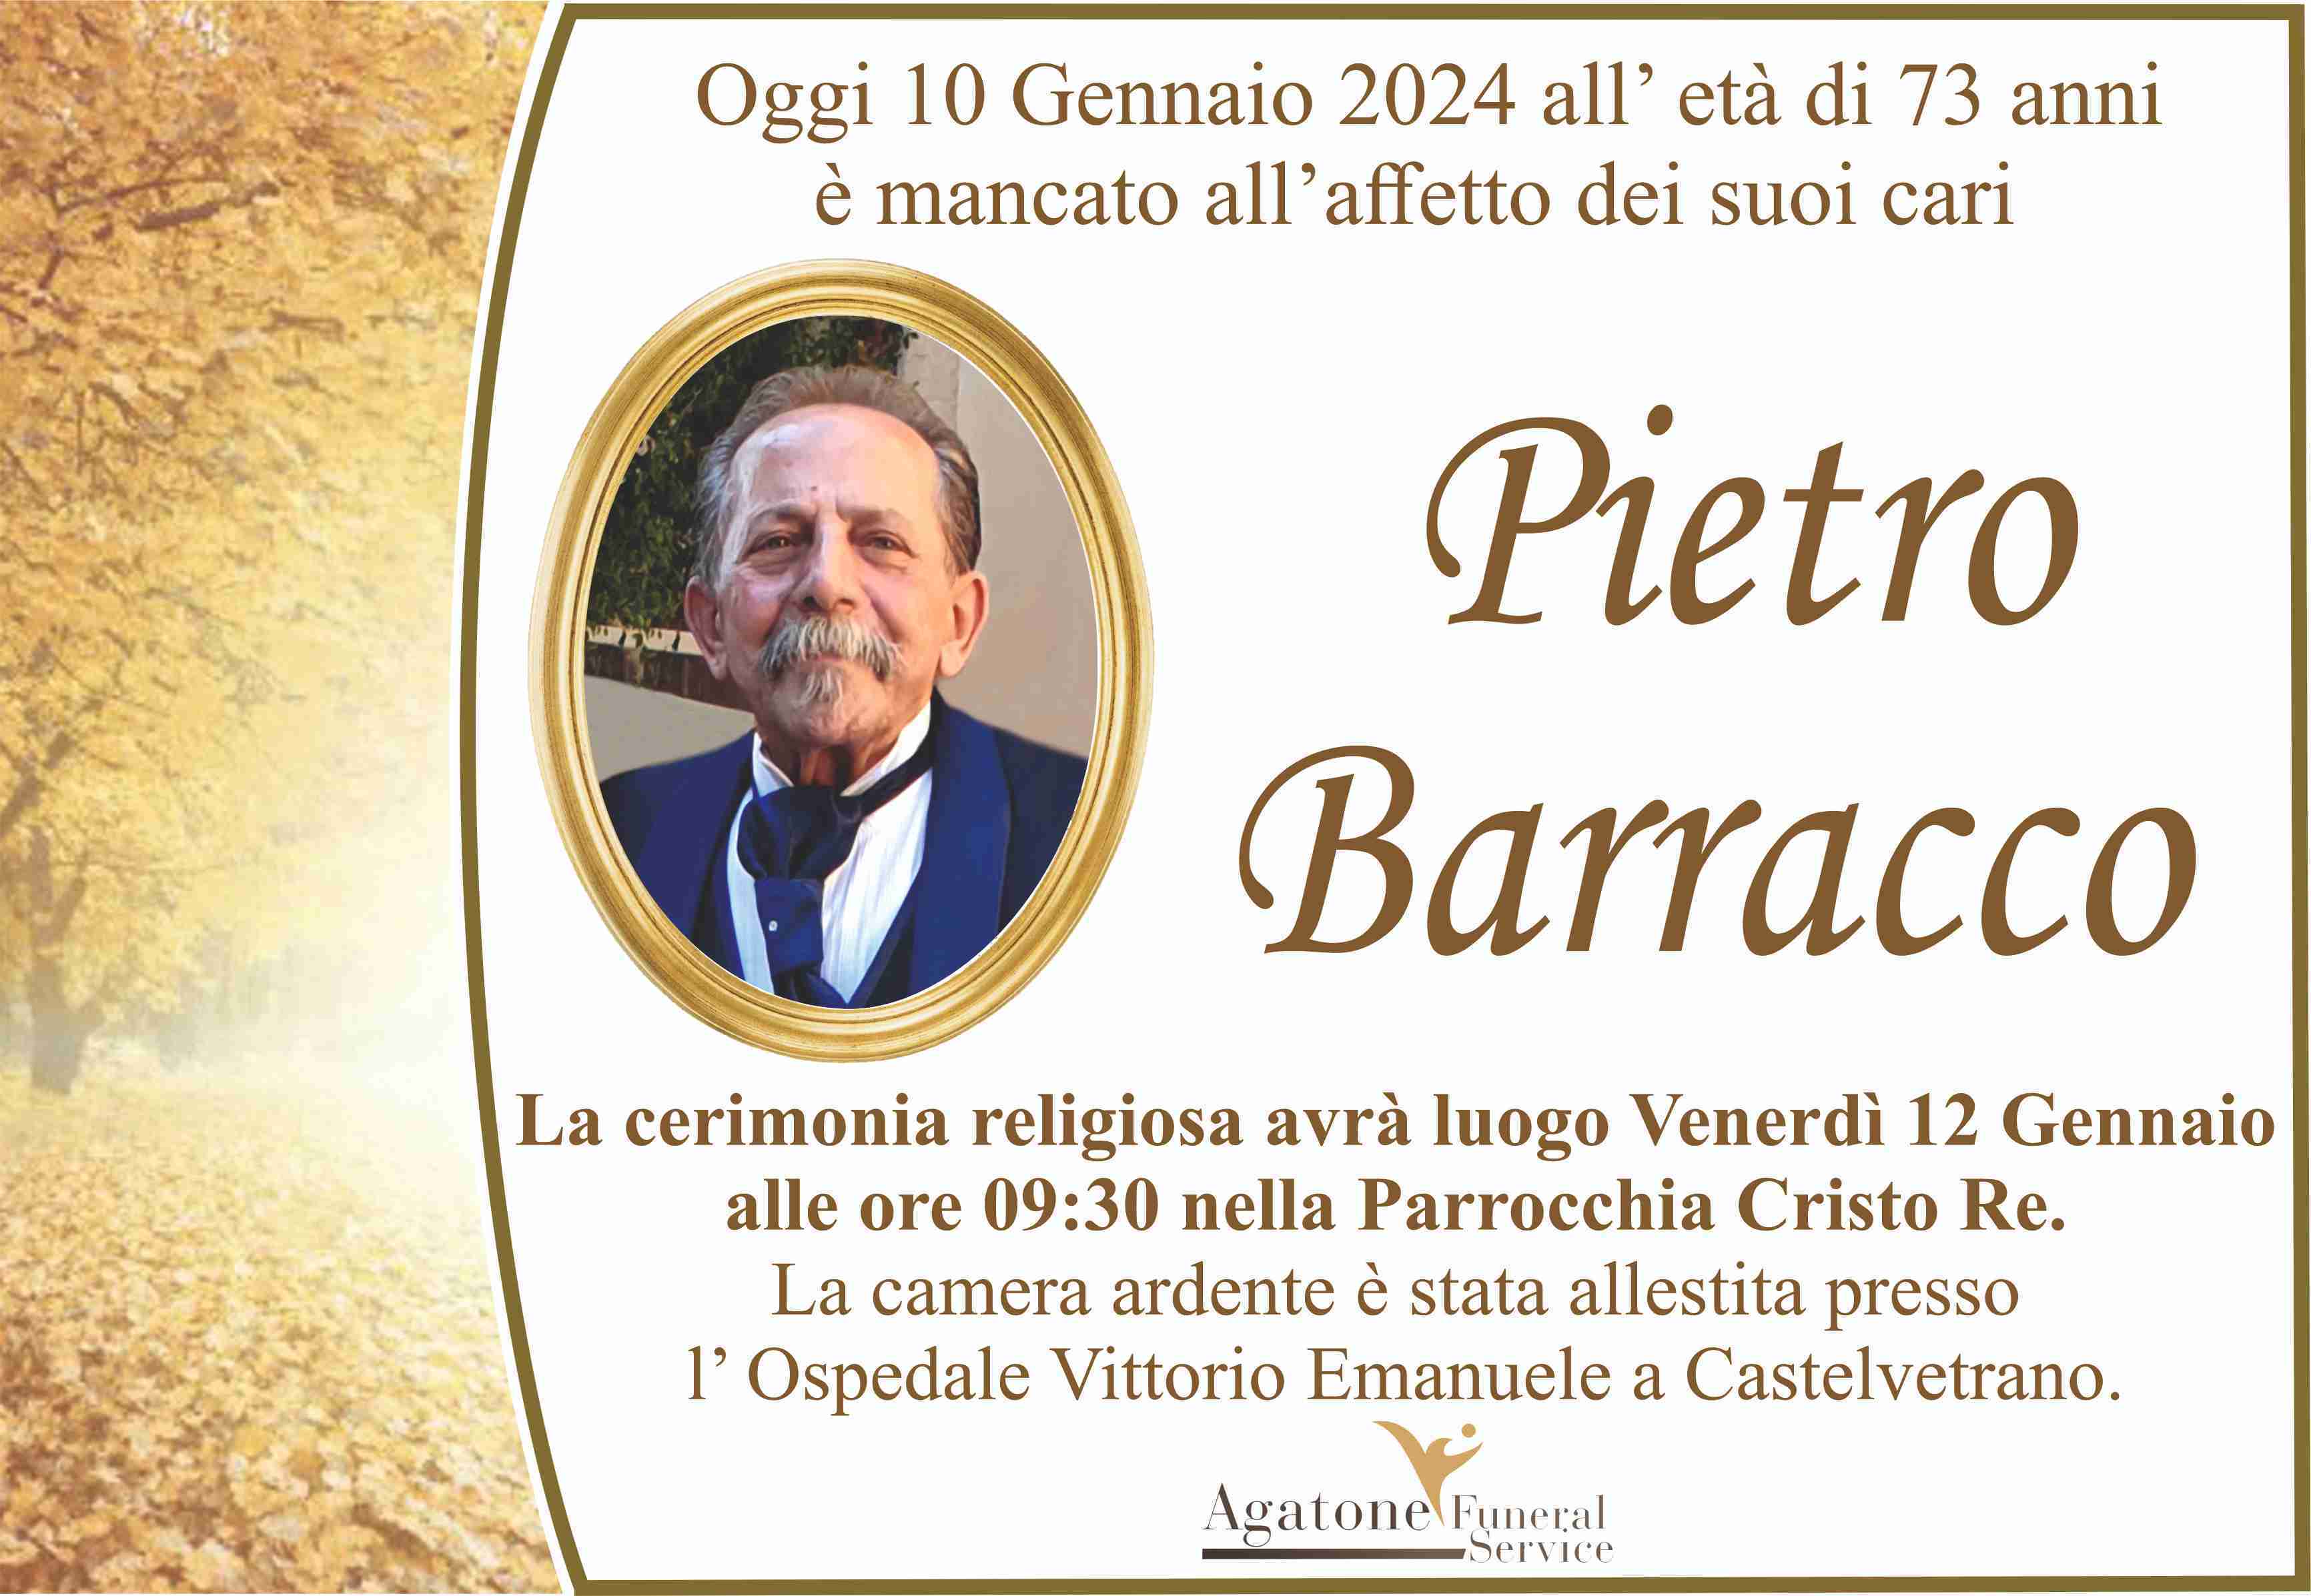 Pietro Barracco